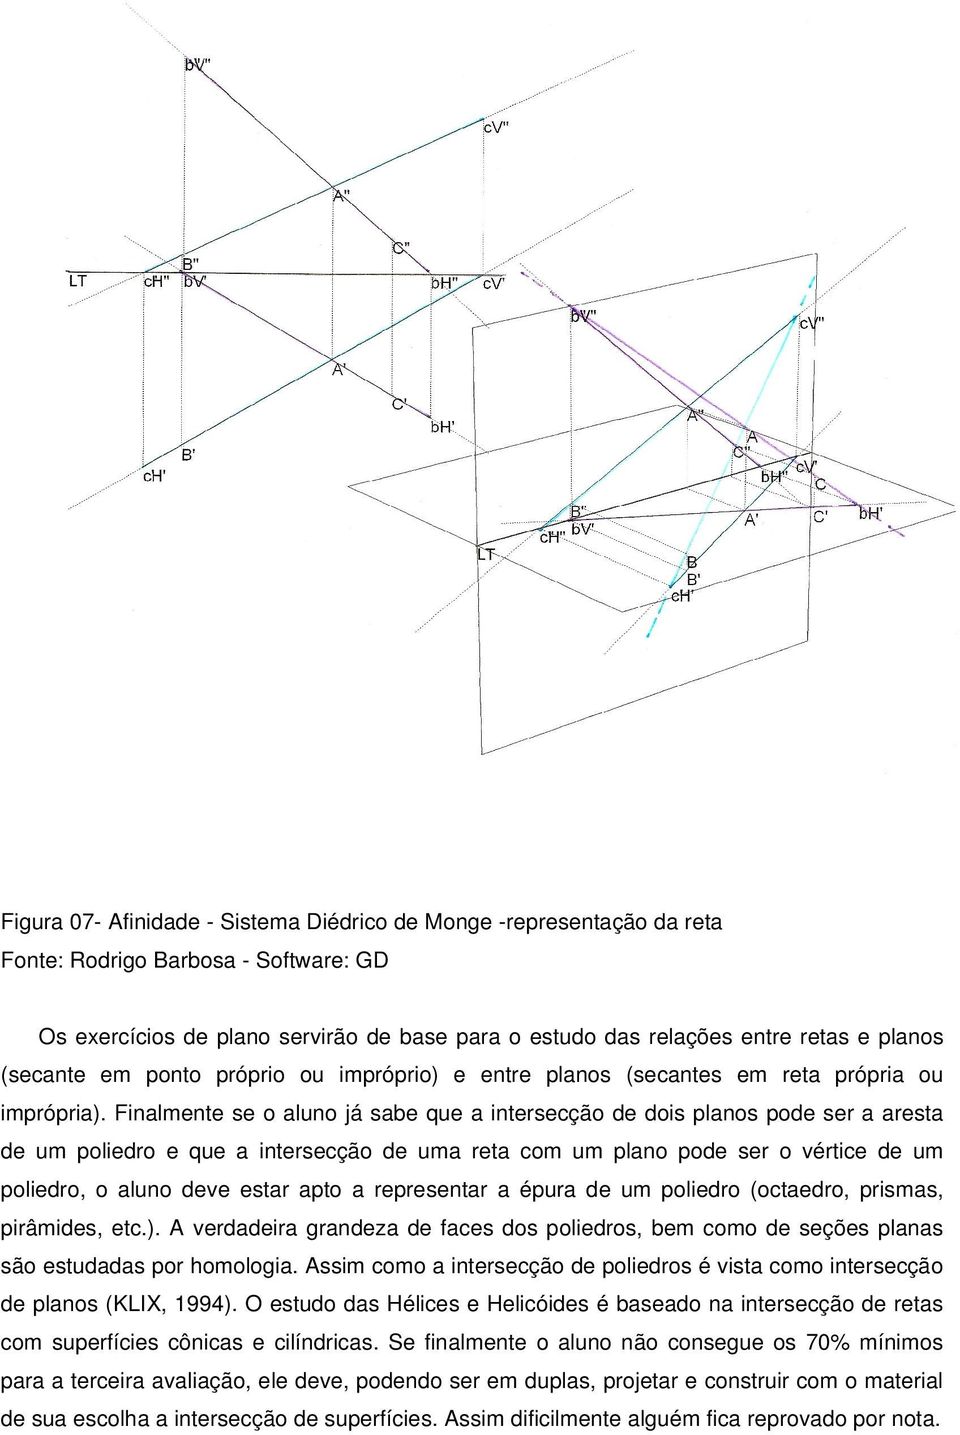 Finalmente se o aluno já sabe que a intersecção de dois planos pode ser a aresta de um poliedro e que a intersecção de uma reta com um plano pode ser o vértice de um poliedro, o aluno deve estar apto